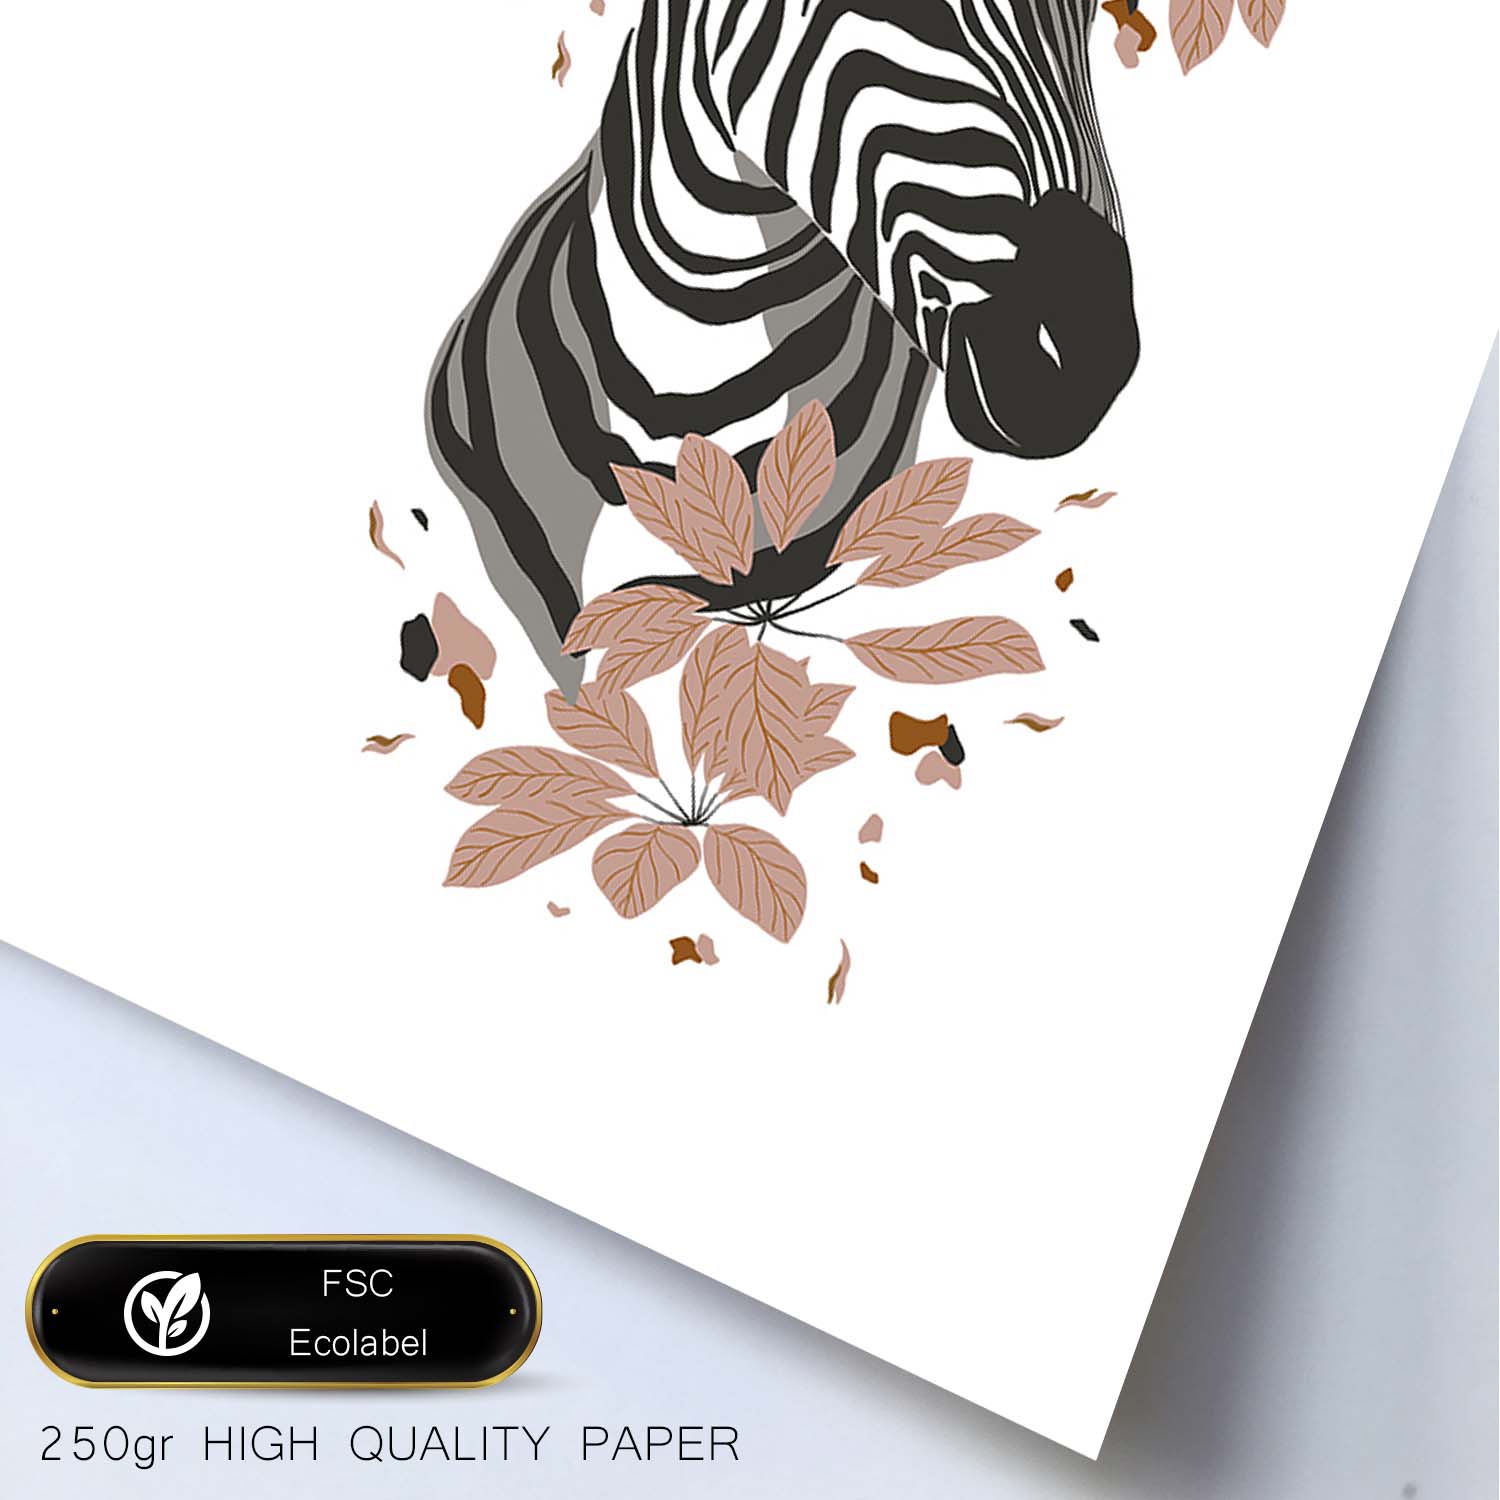 Poster de Cara Zebra. Lámina de animal de la jungla con flores y vegetación.-Artwork-Nacnic-Nacnic Estudio SL